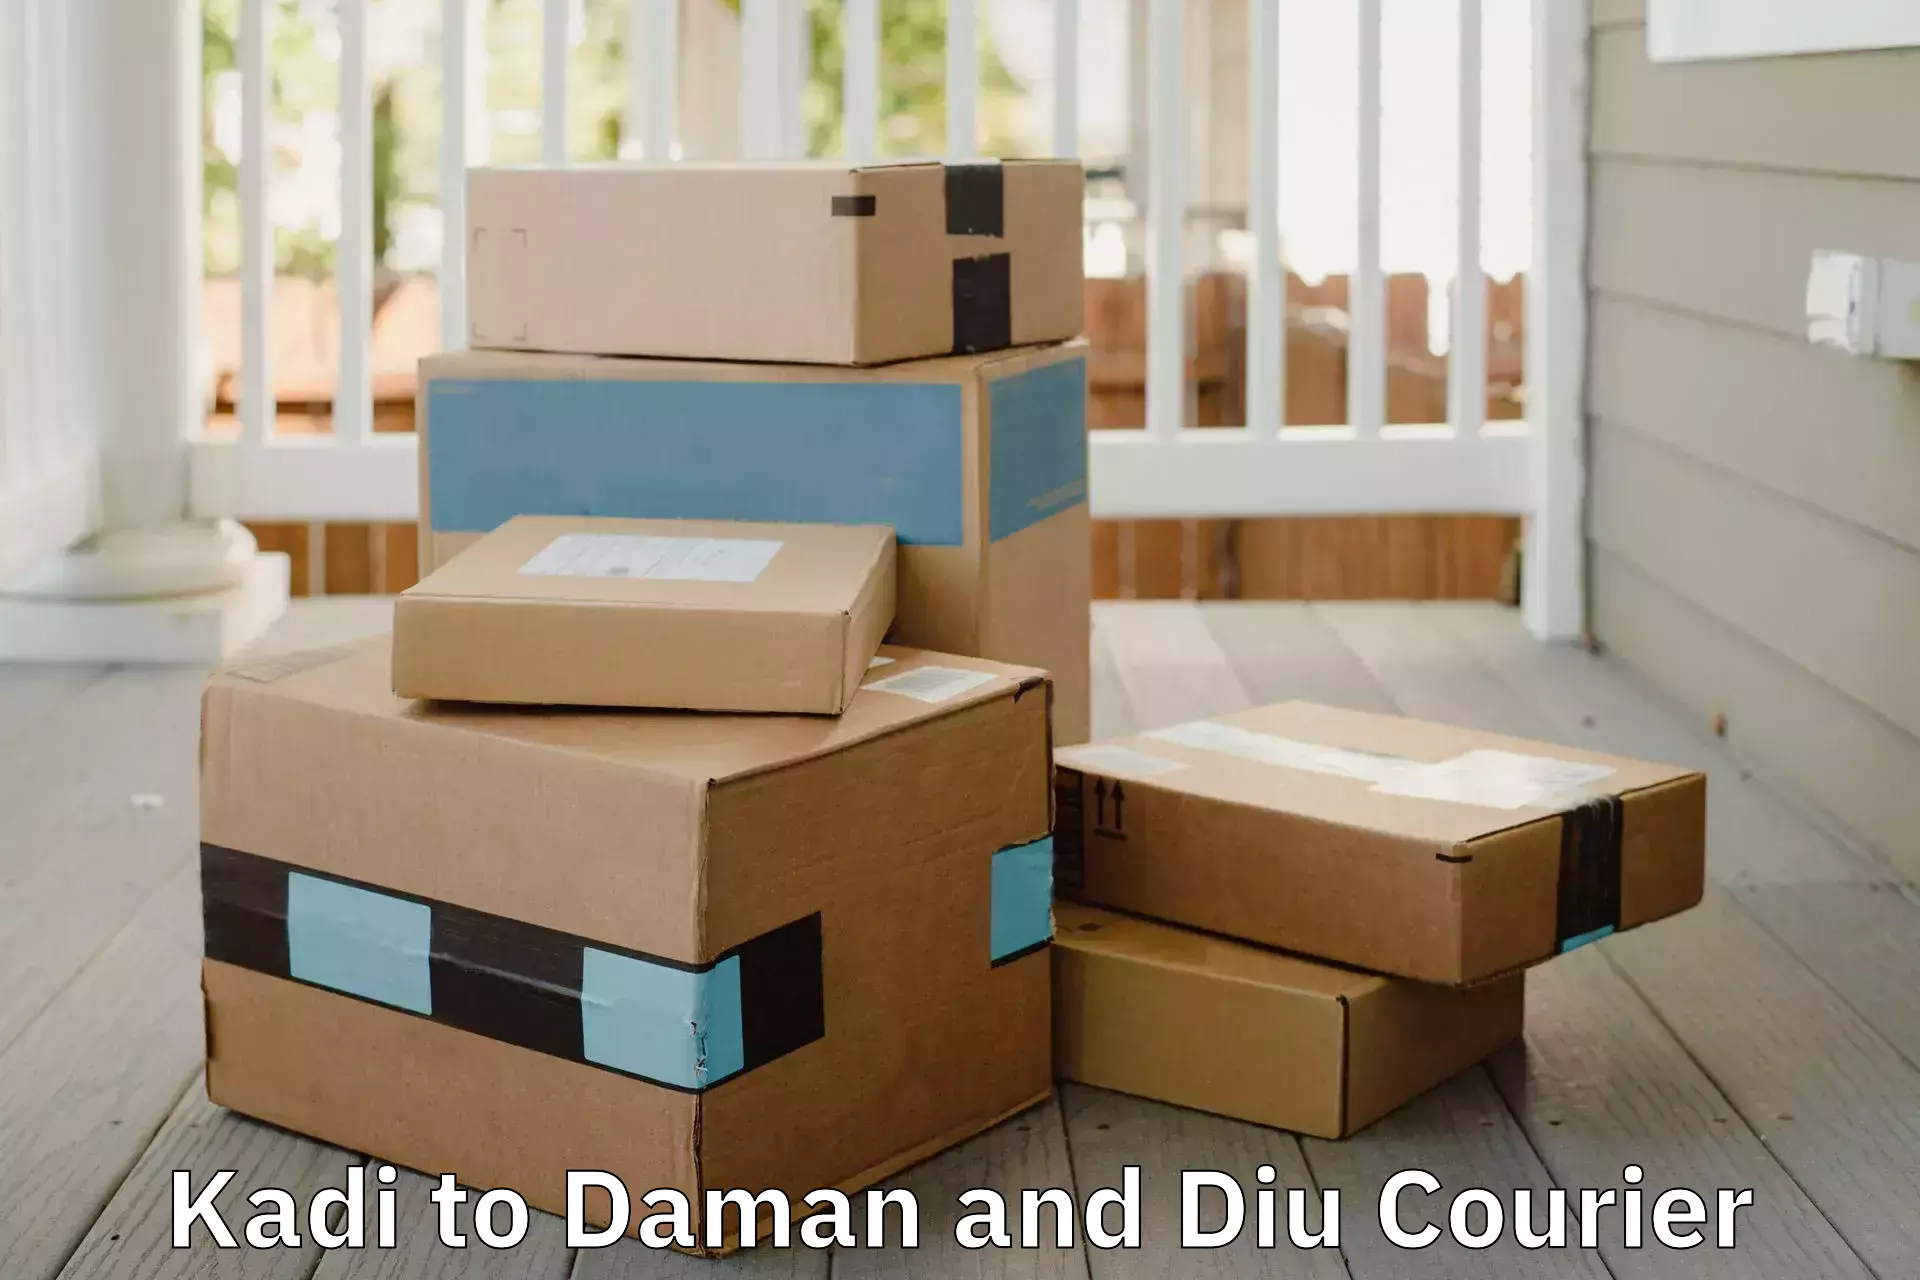 Expert goods movers Kadi to Daman